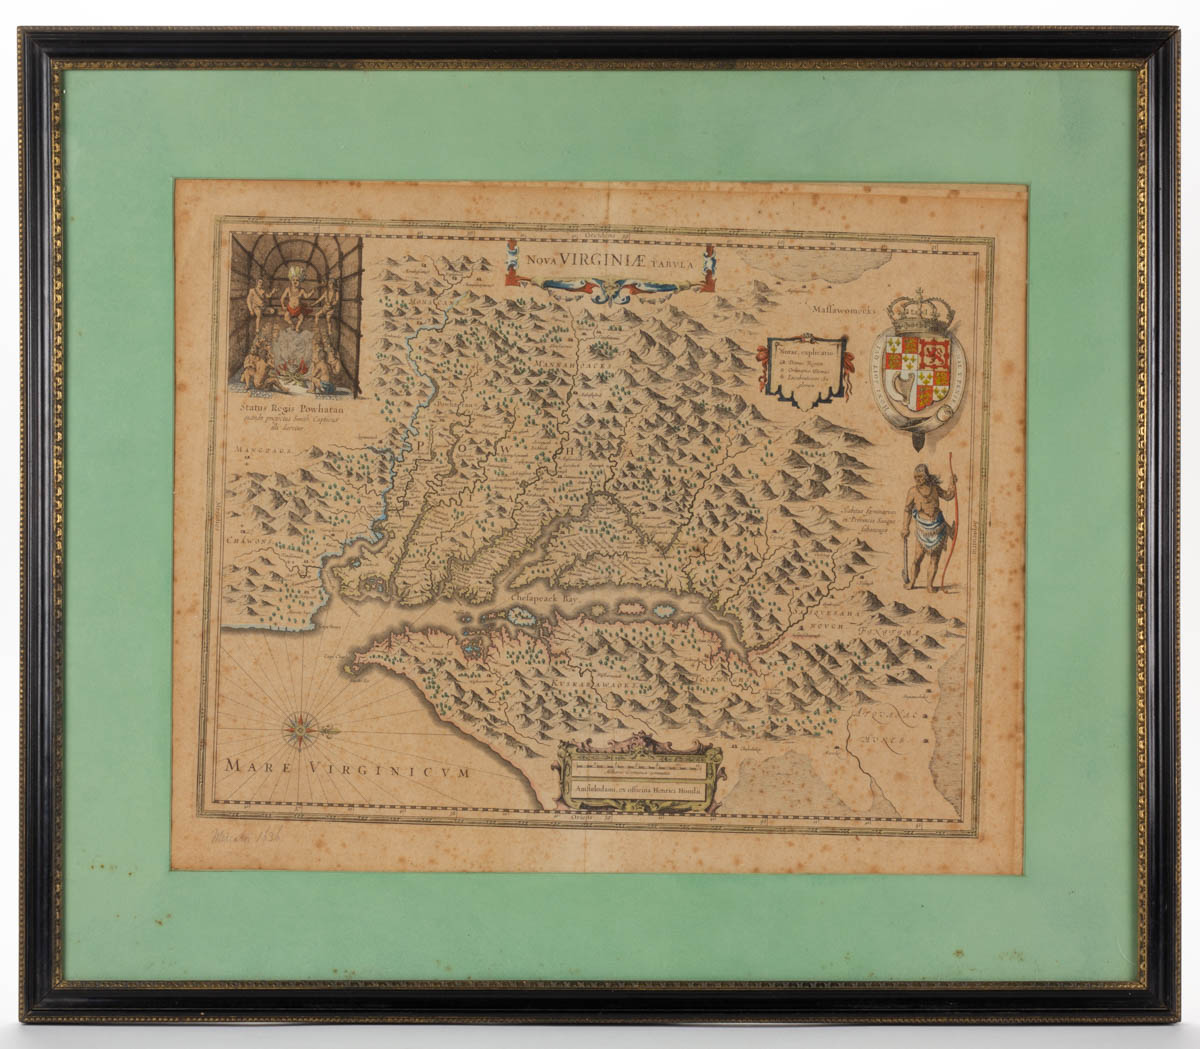 HENRICUS HONDIUS (DUTCH, 1597-1651) MAP OF VIRGINIA